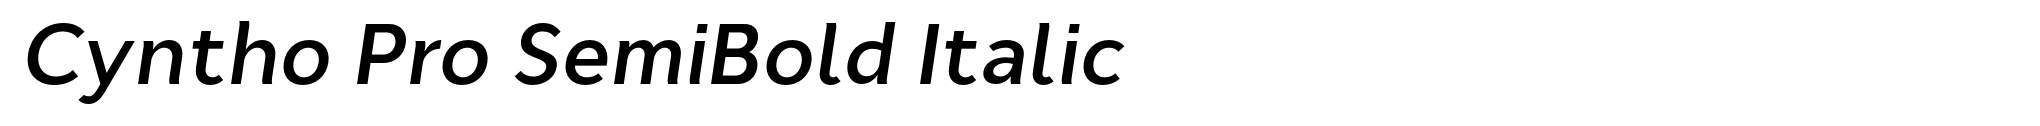 Cyntho Pro SemiBold Italic image